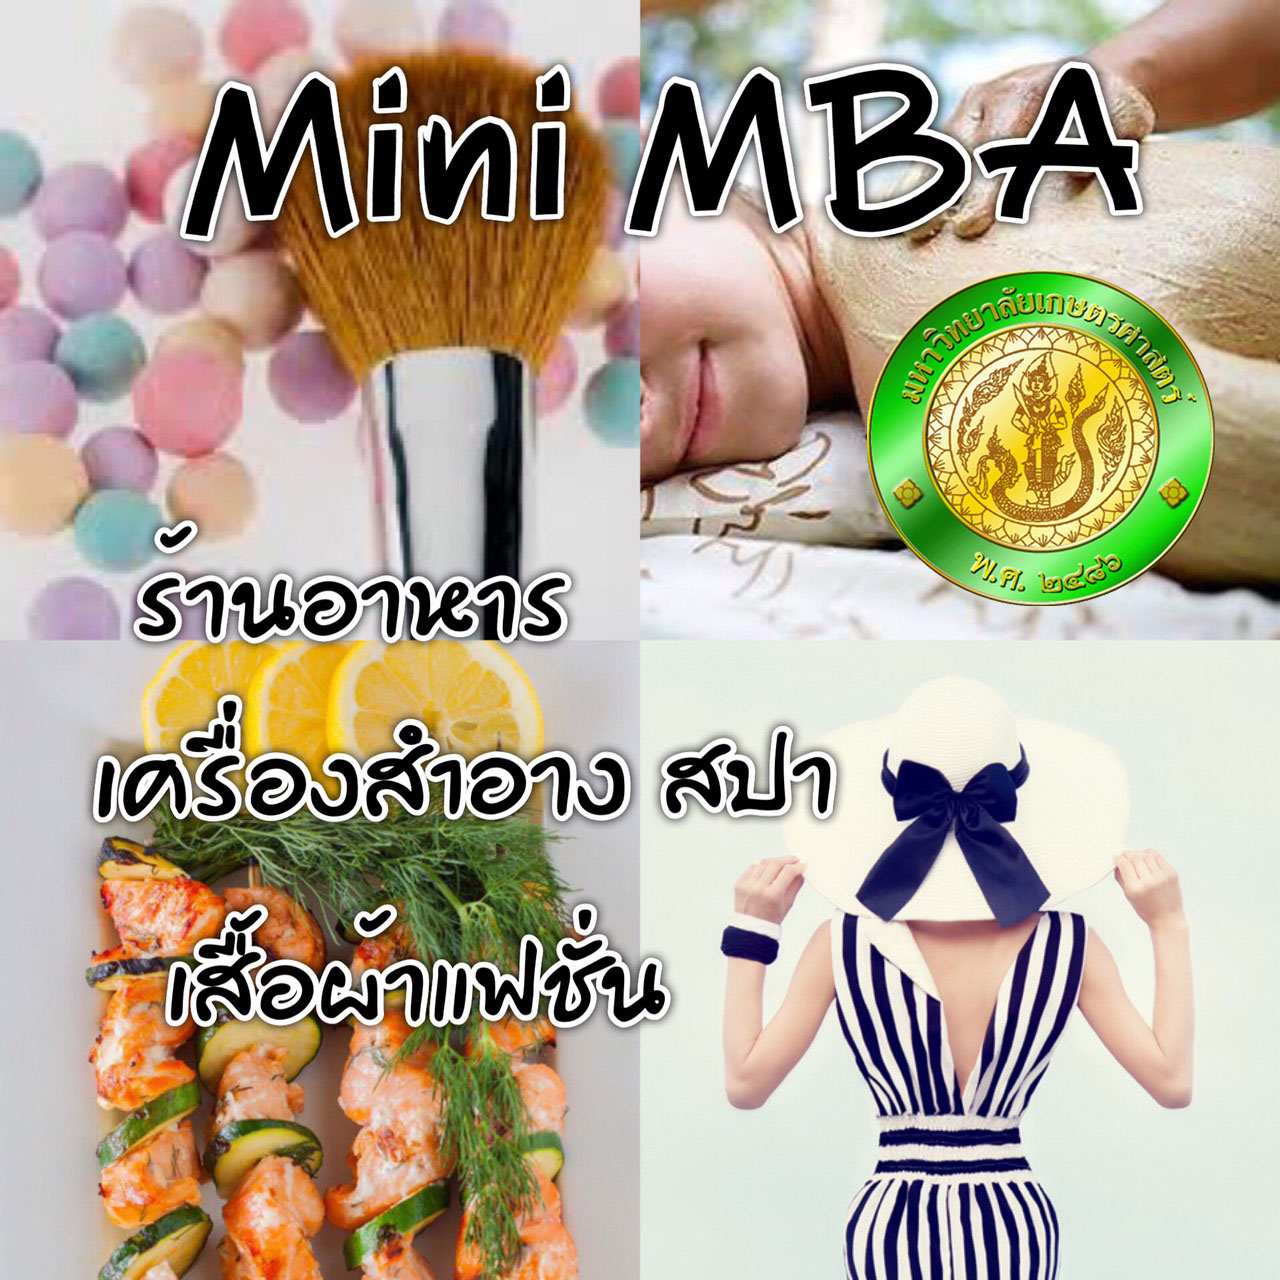 Mini MBA การจัดการธุรกิจฯ